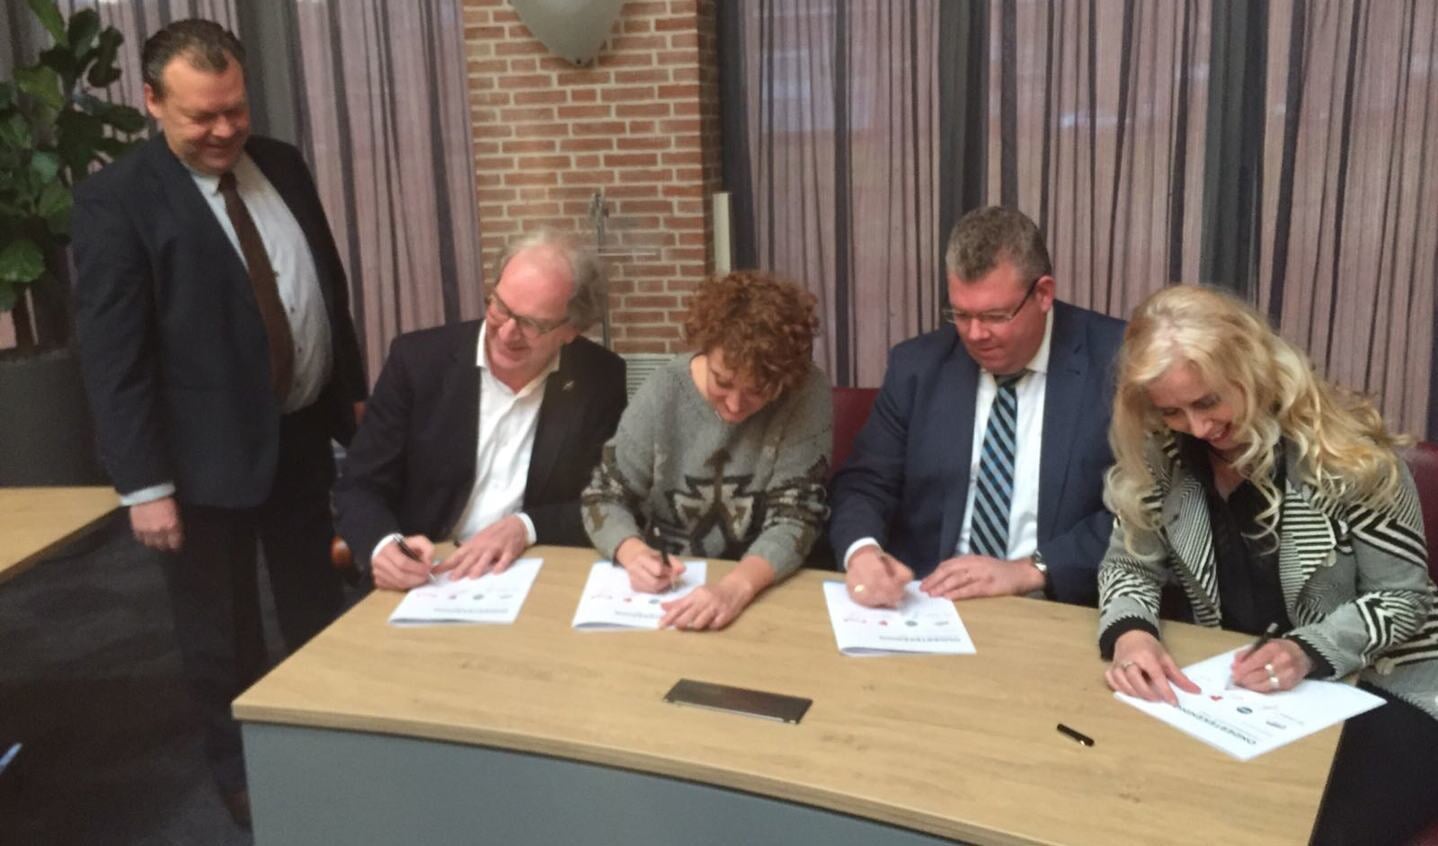 Staand: Eus Witlox.
Zittend: Sikko Oegema (PvdA), Janine Heisterkamp (TEAM),  Johan van Gerwen (CDA) en Wilma Wagenaars-Van Beers tekenen het akkoord.